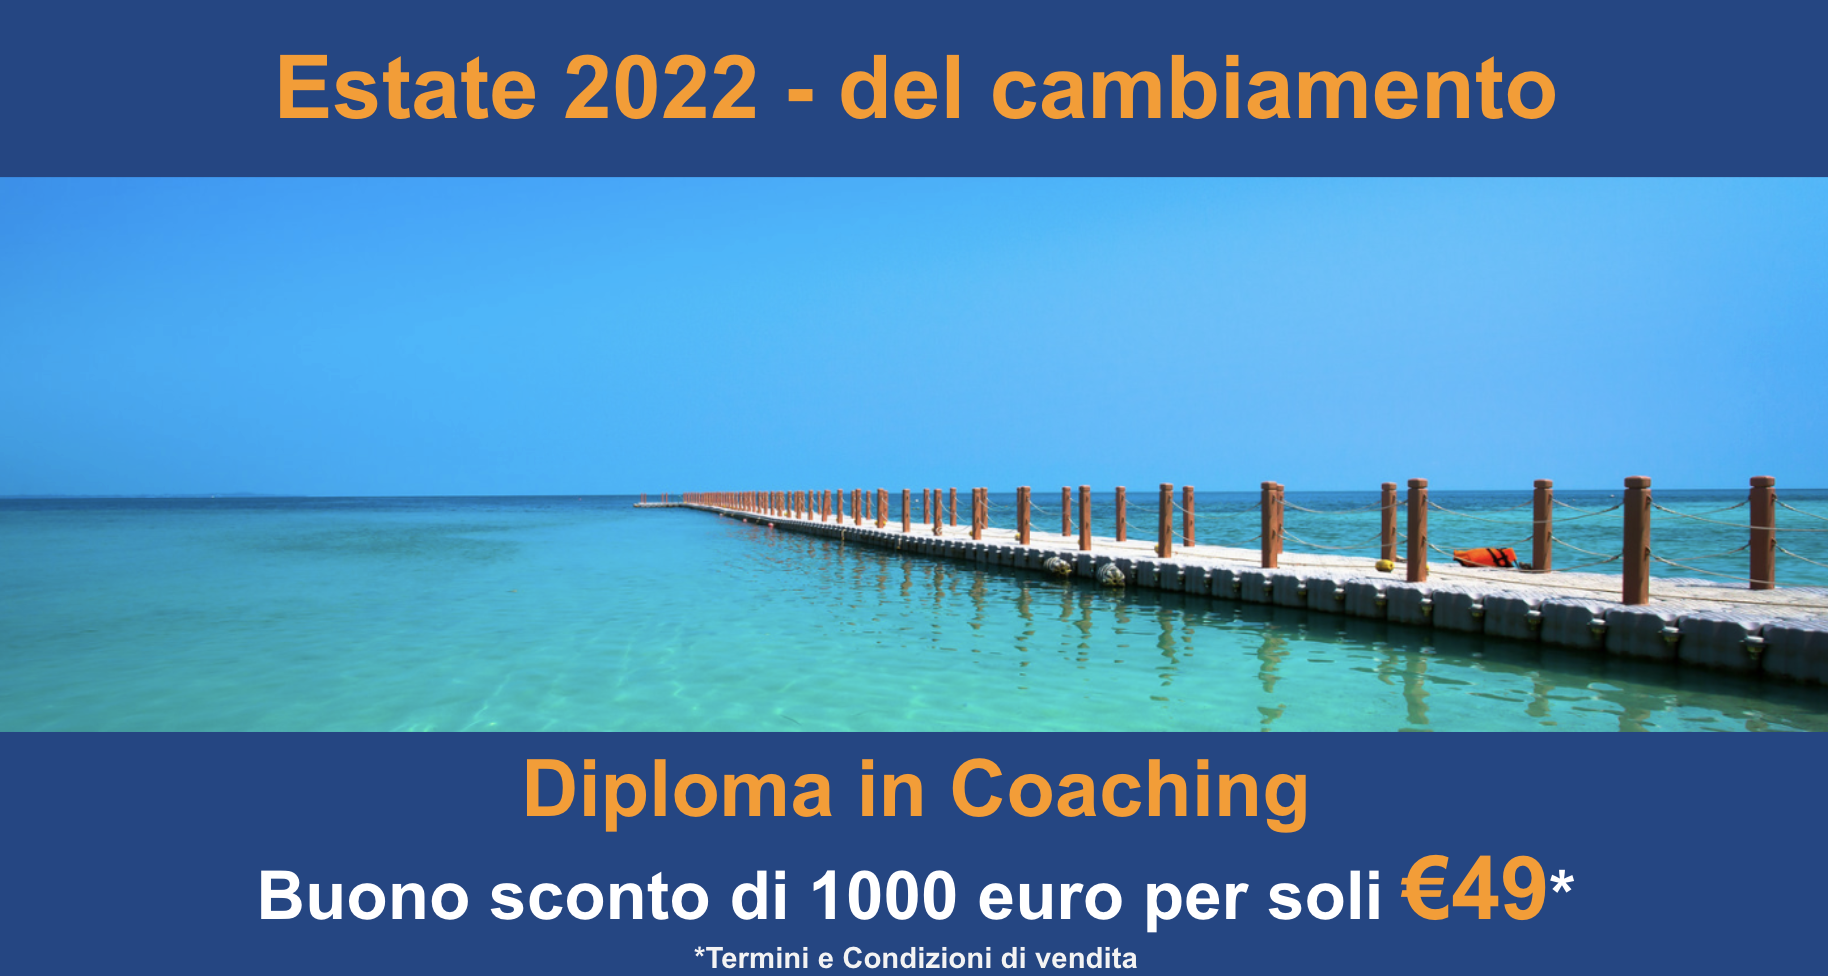 Diploma in Coaching  Buono sconto di 1000 euro per soli €49